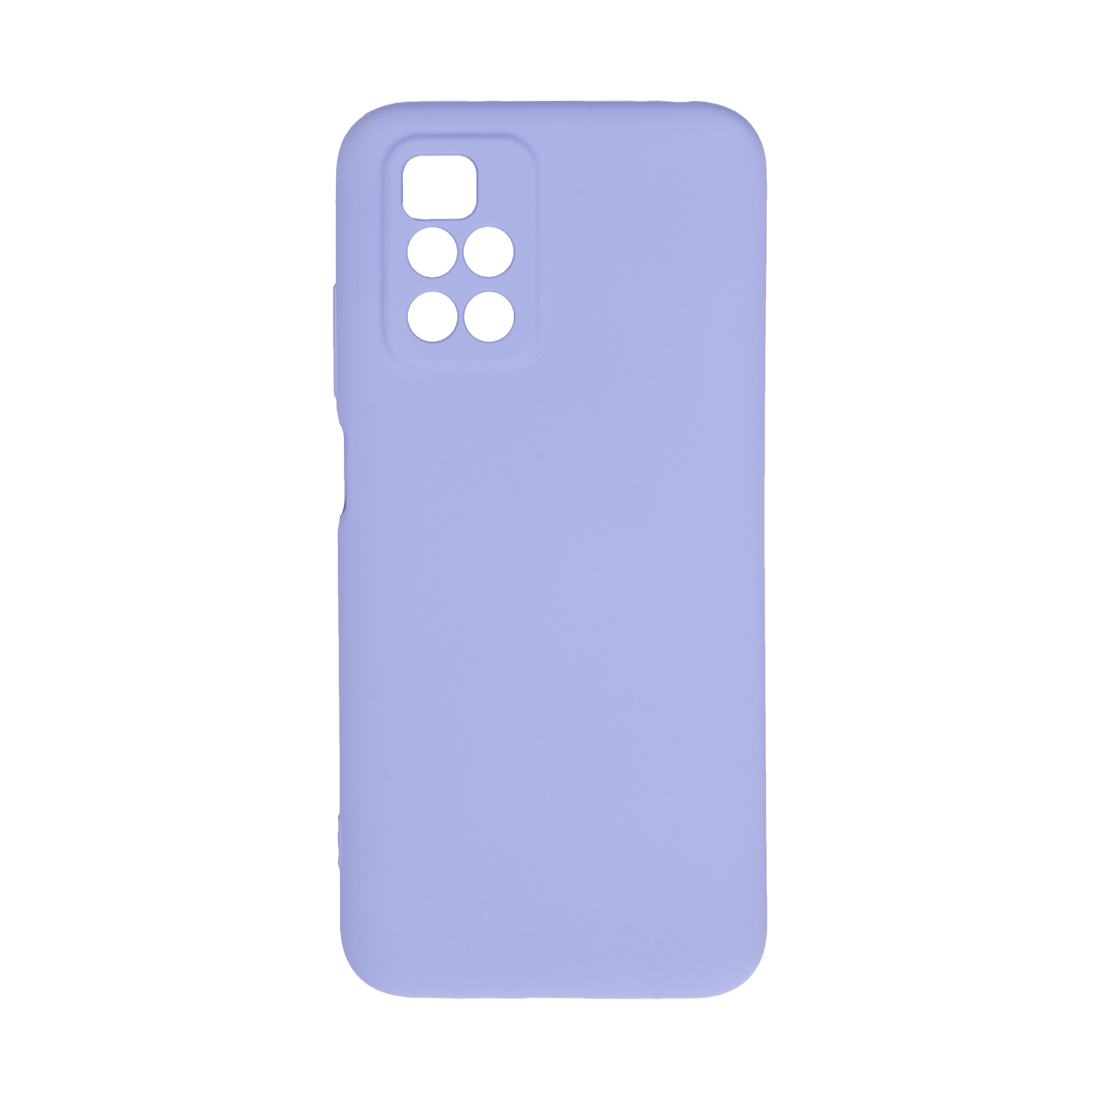 картинка Чехол для телефона X-Game XG-HS20 для Redmi 10 Силиконовый Сирень от магазина itmag.kz